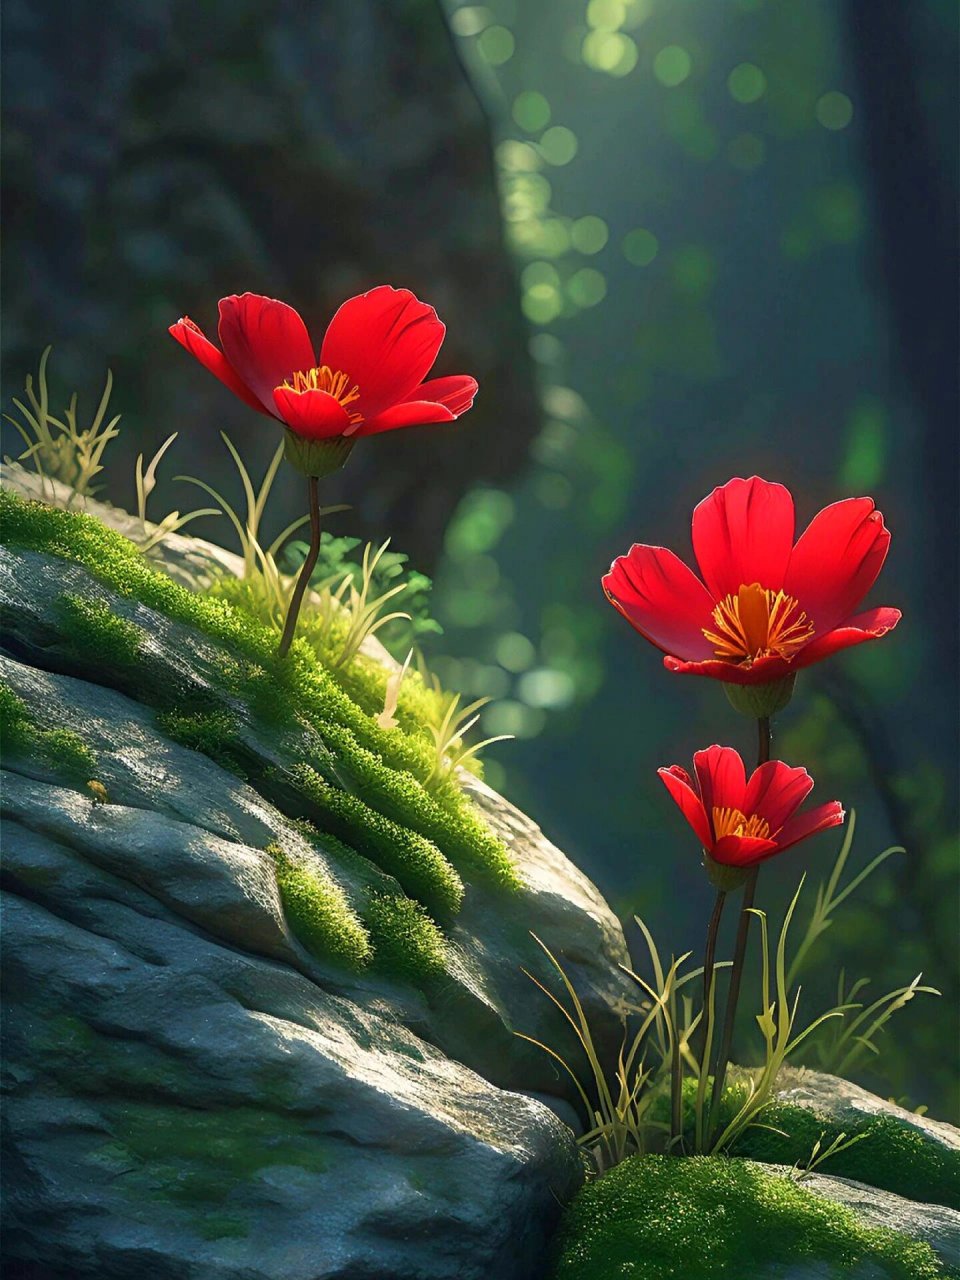 岩石上绽放的红花,顽强而又惊艳 